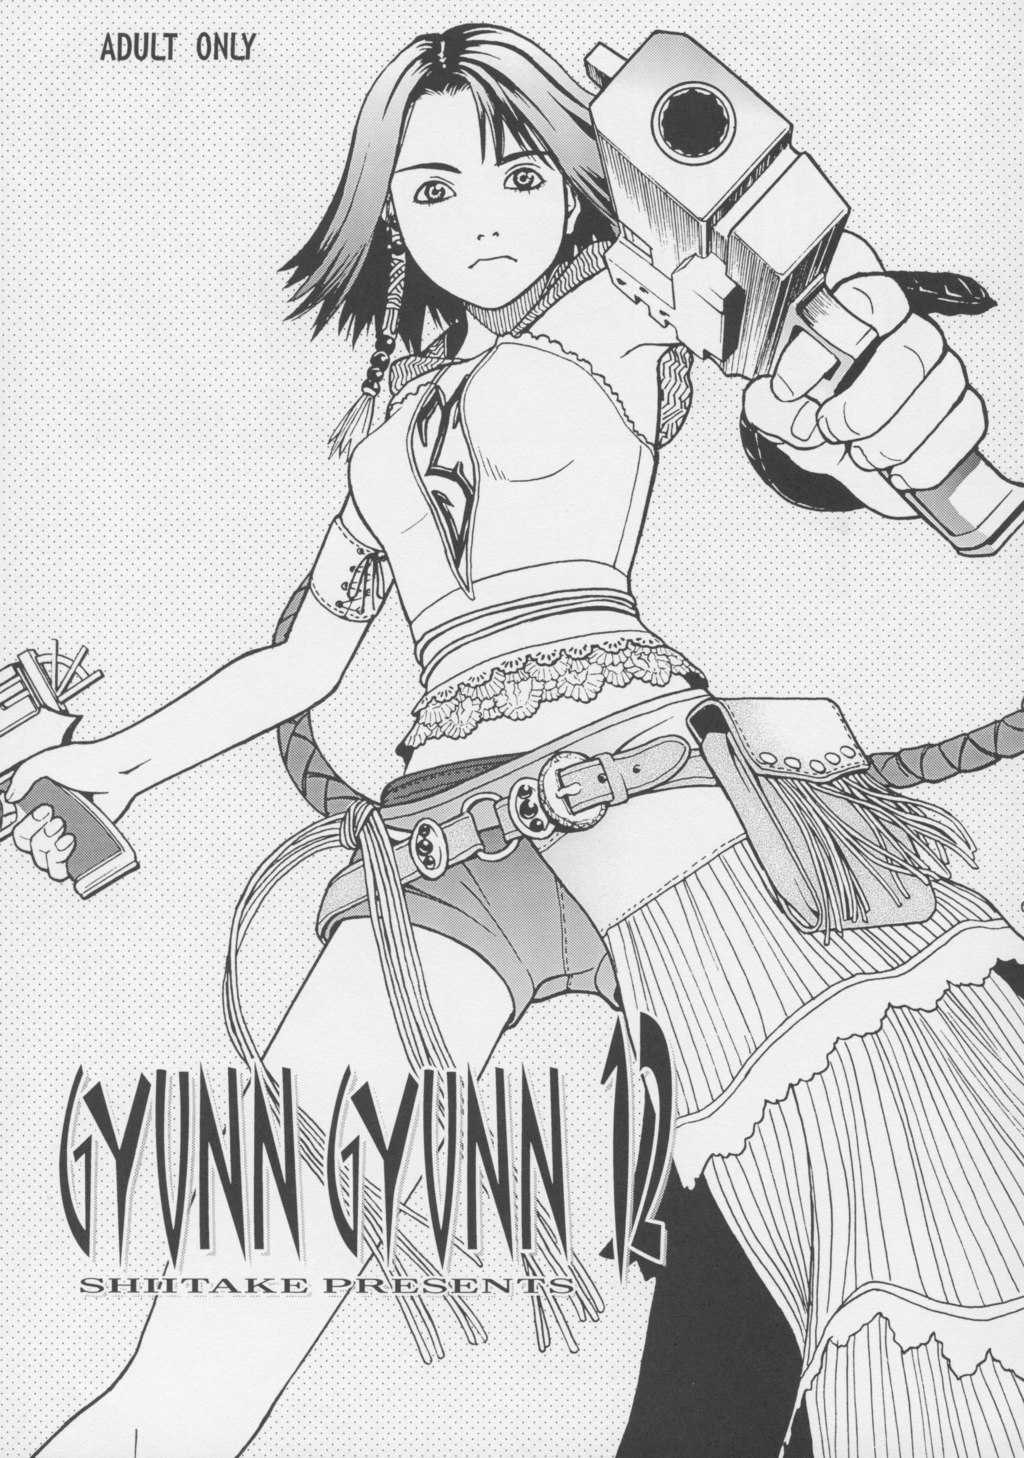 [Shiitake] Gyunn Gyunn 12 (Final Fantasy 10) 